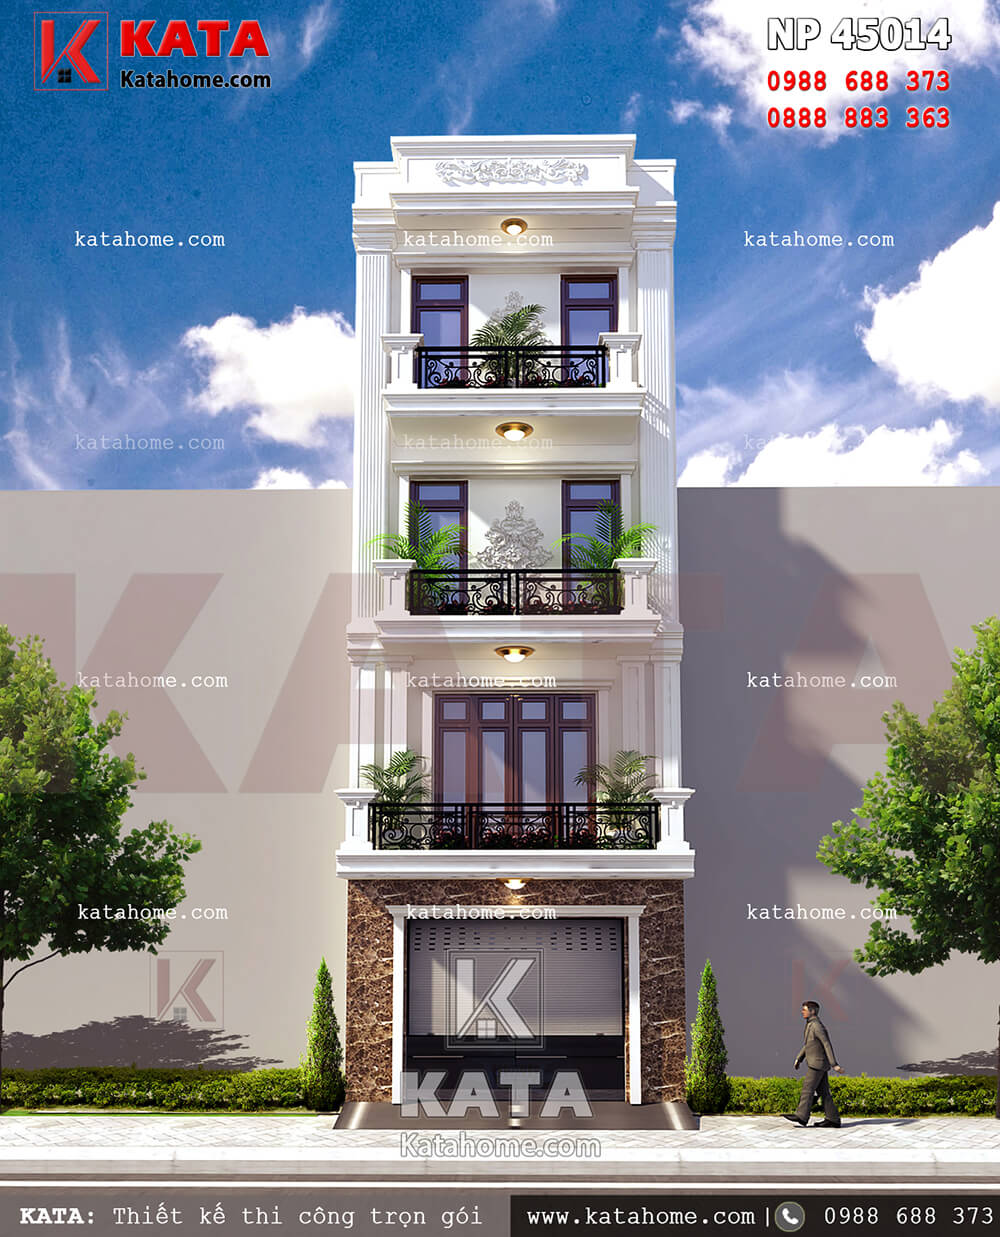 Mẫu thiết kế nhà ở 4 tầng tân cổ điển tại Hà Nội – Mã số: NP 45014